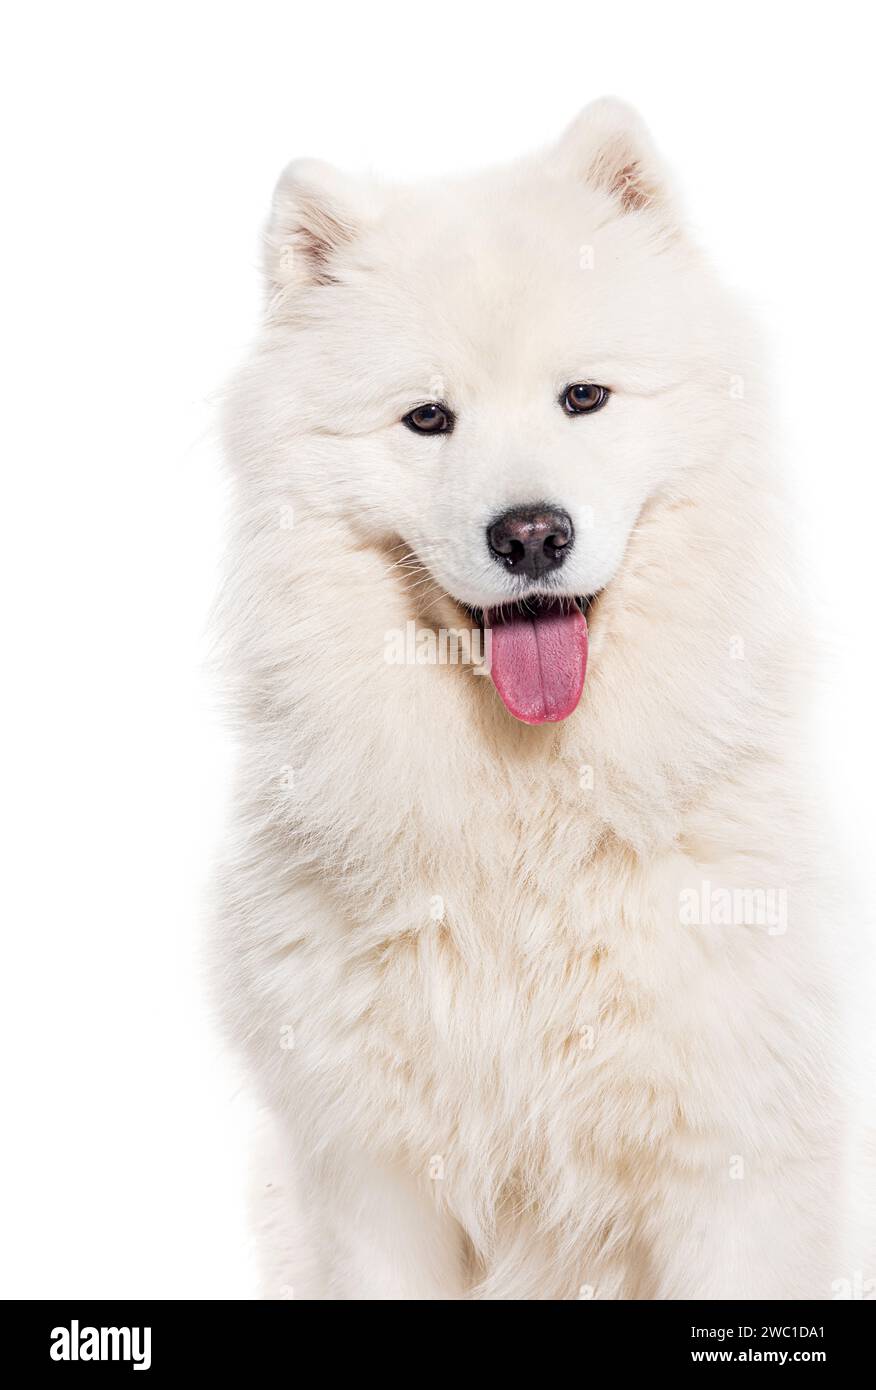 Foto della testa di un cane Samoiato Panting bianco che guarda la fotocamera, isolato su bianco Foto Stock